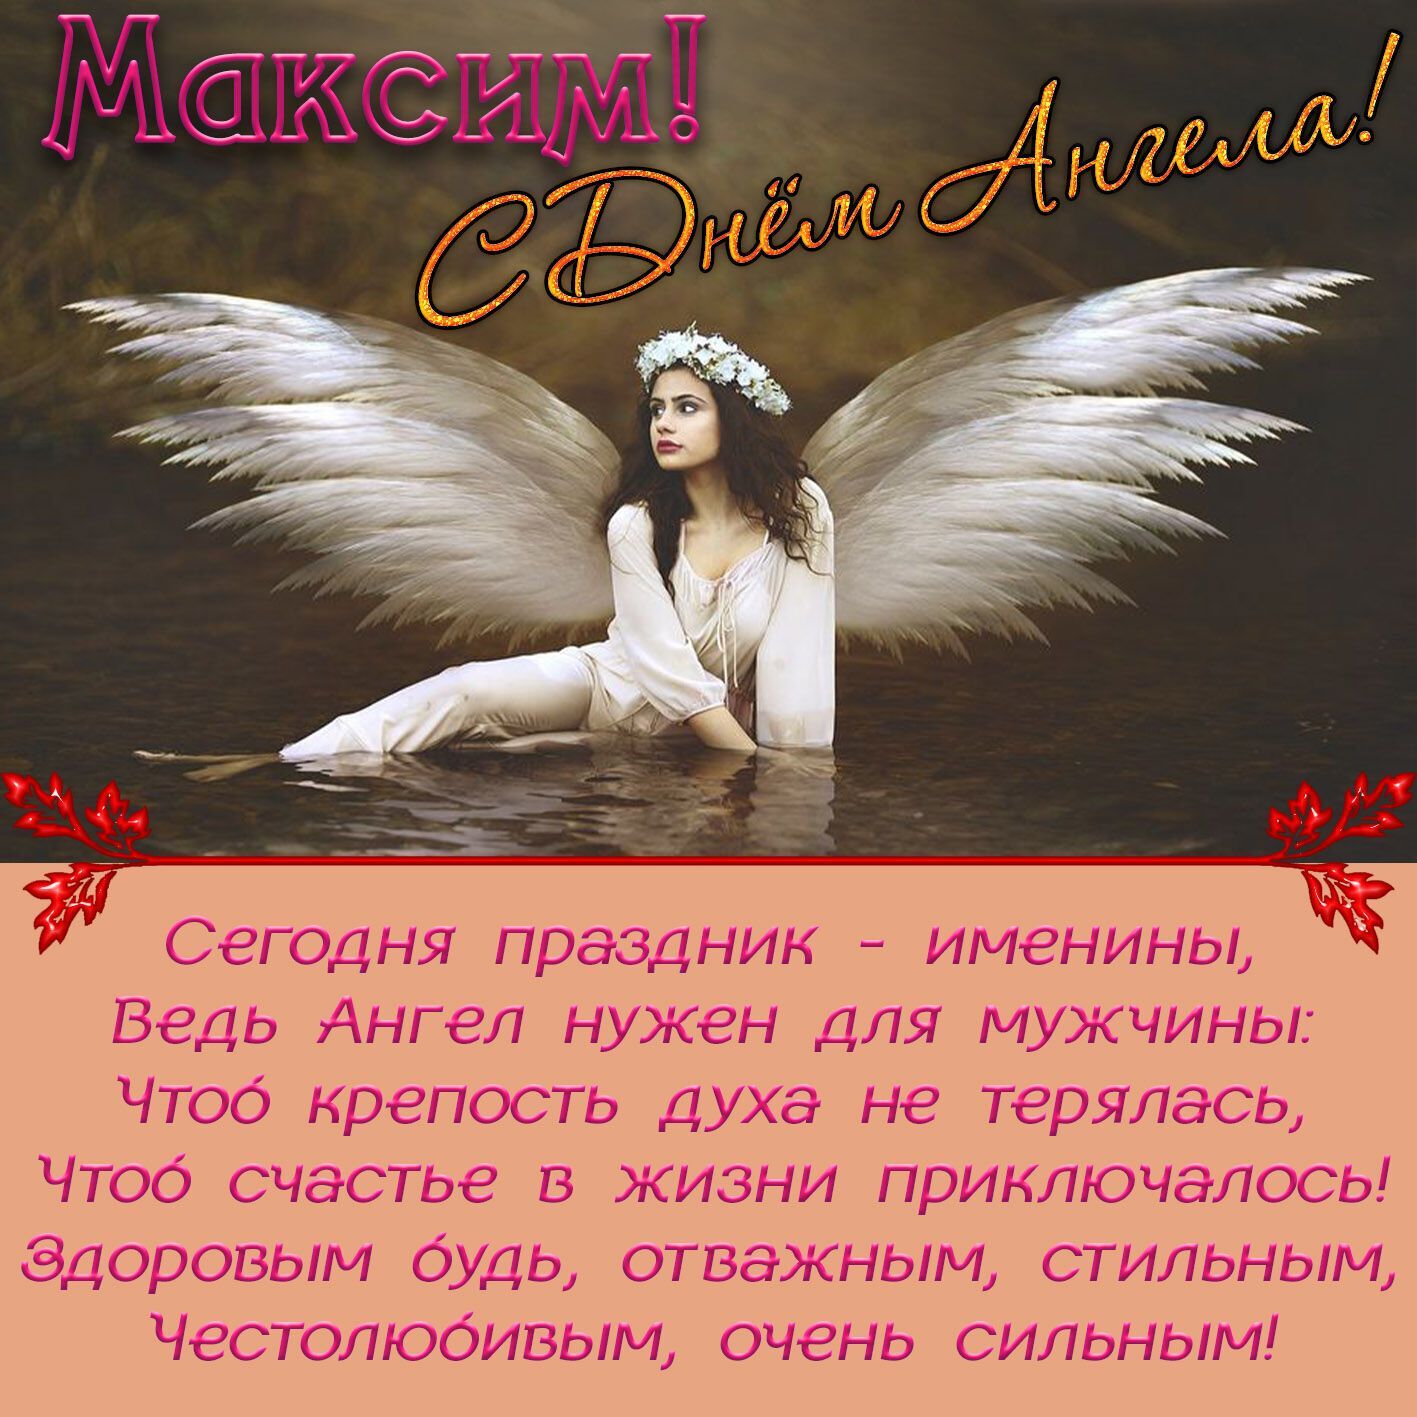 Пожелания в день ангела Максима